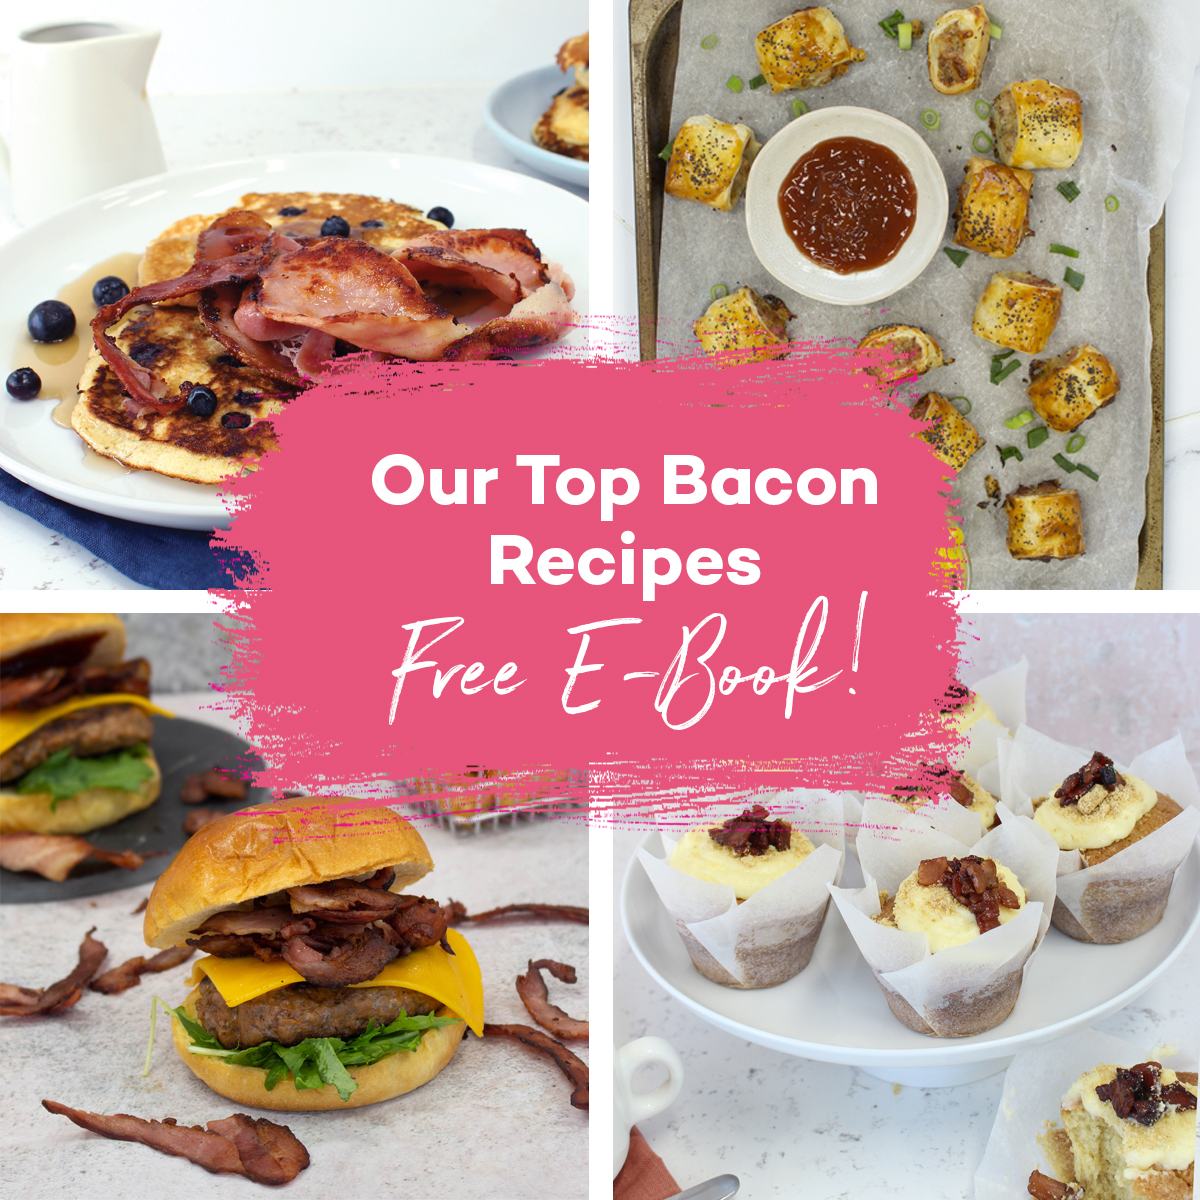 Our top bacon recipes free e-boo